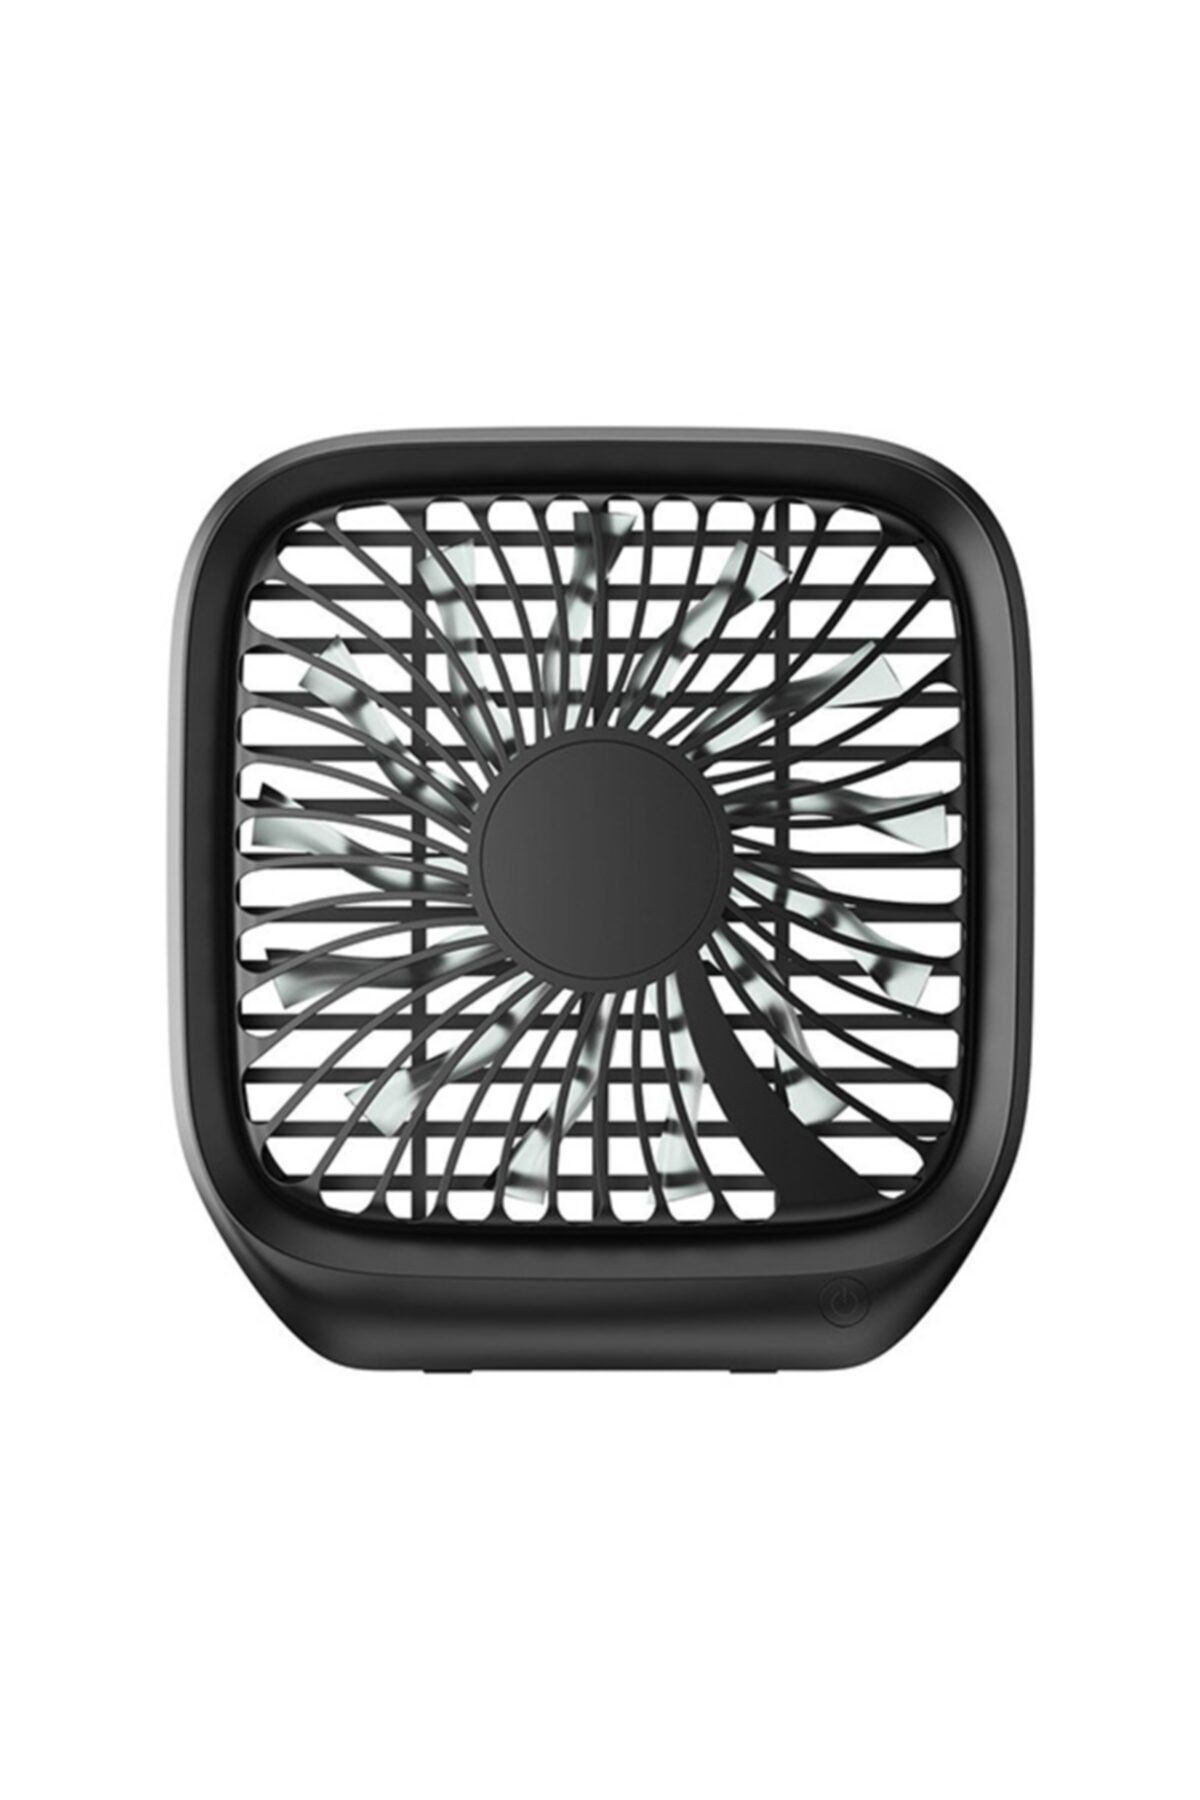 Ally Mobile Baseus Foldable Usb Araç Arka Koltuk Vantilatör Fan Soğutucu Siyah